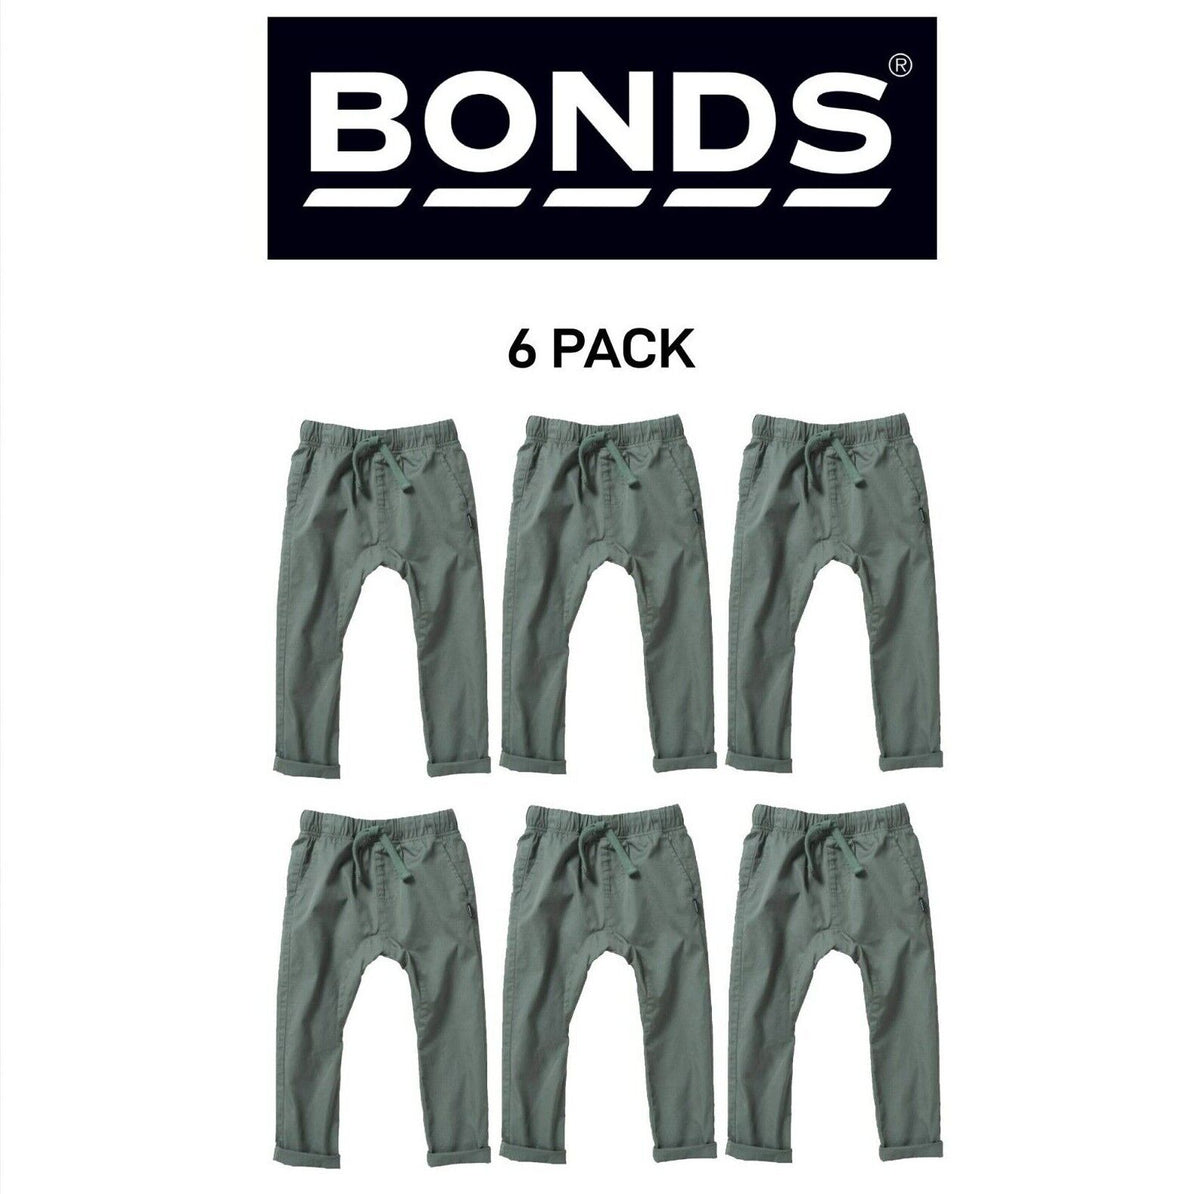 Bonds Kids Next Gen Cargo Pants Super Soft Waistband with Pockets 6 Pack KY9CK